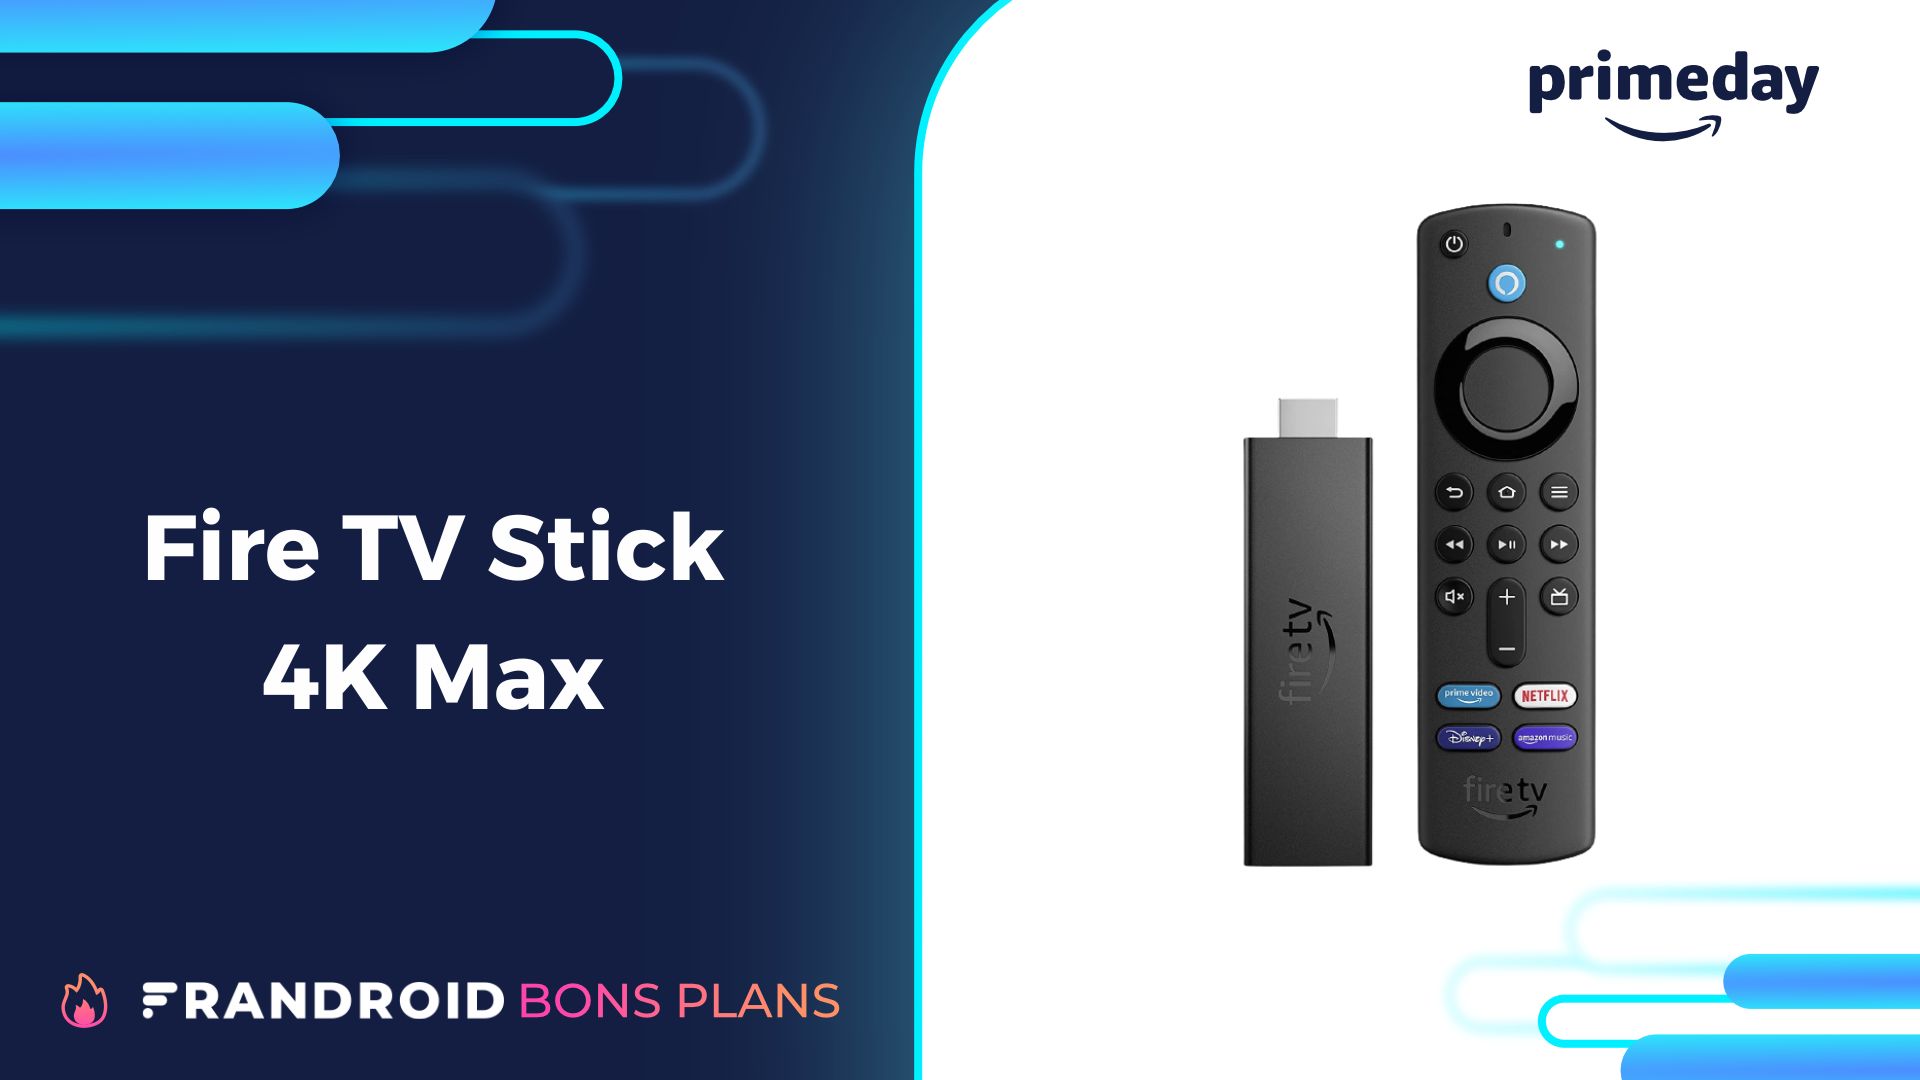 Les nouveaux Fire TV Stick 4K Max d' sont disponibles